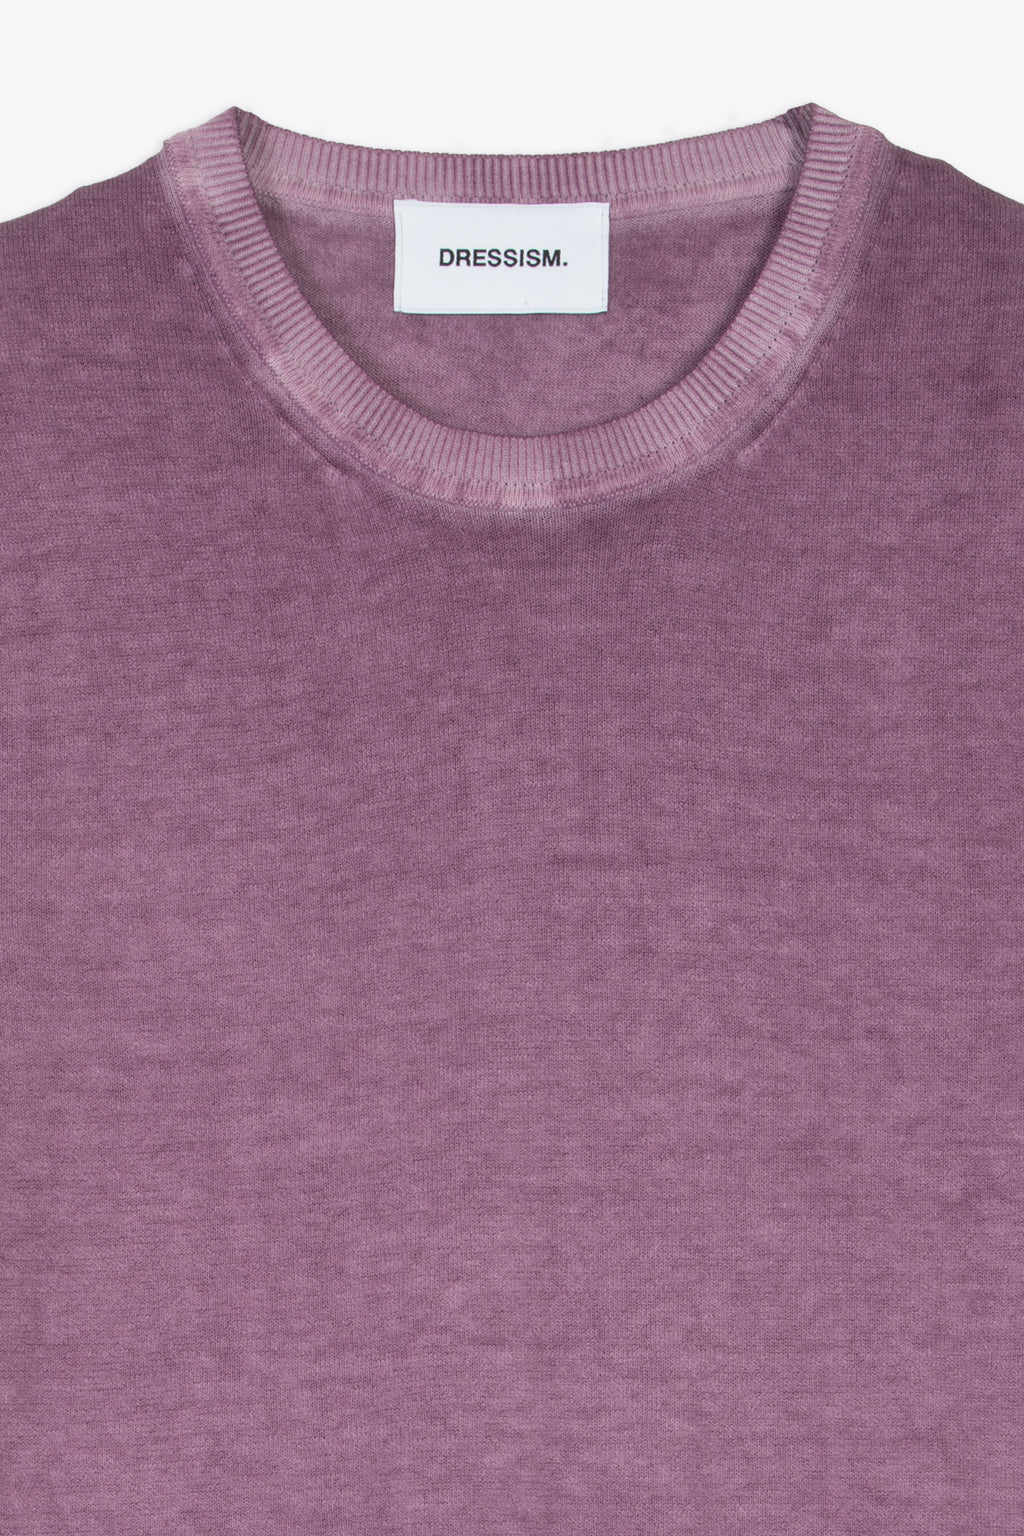 alt-image__T-shirt-in-filo-di-cotone-viola-lavato